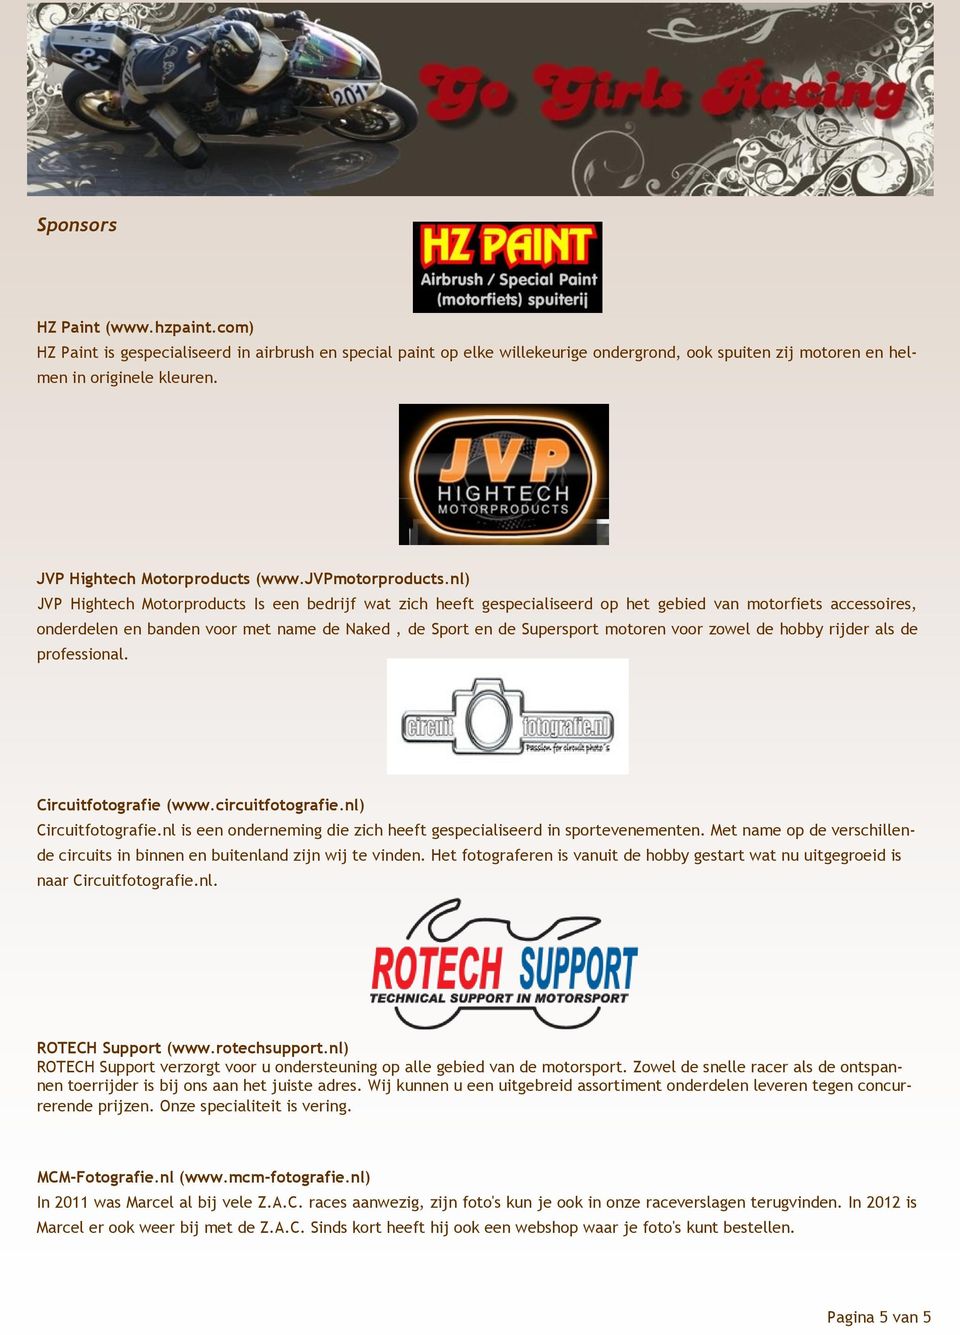 nl) JVP Hightech Motorproducts Is een bedrijf wat zich heeft gespecialiseerd op het gebied van motorfiets accessoires, onderdelen en banden voor met name de Naked, de Sport en de Supersport motoren